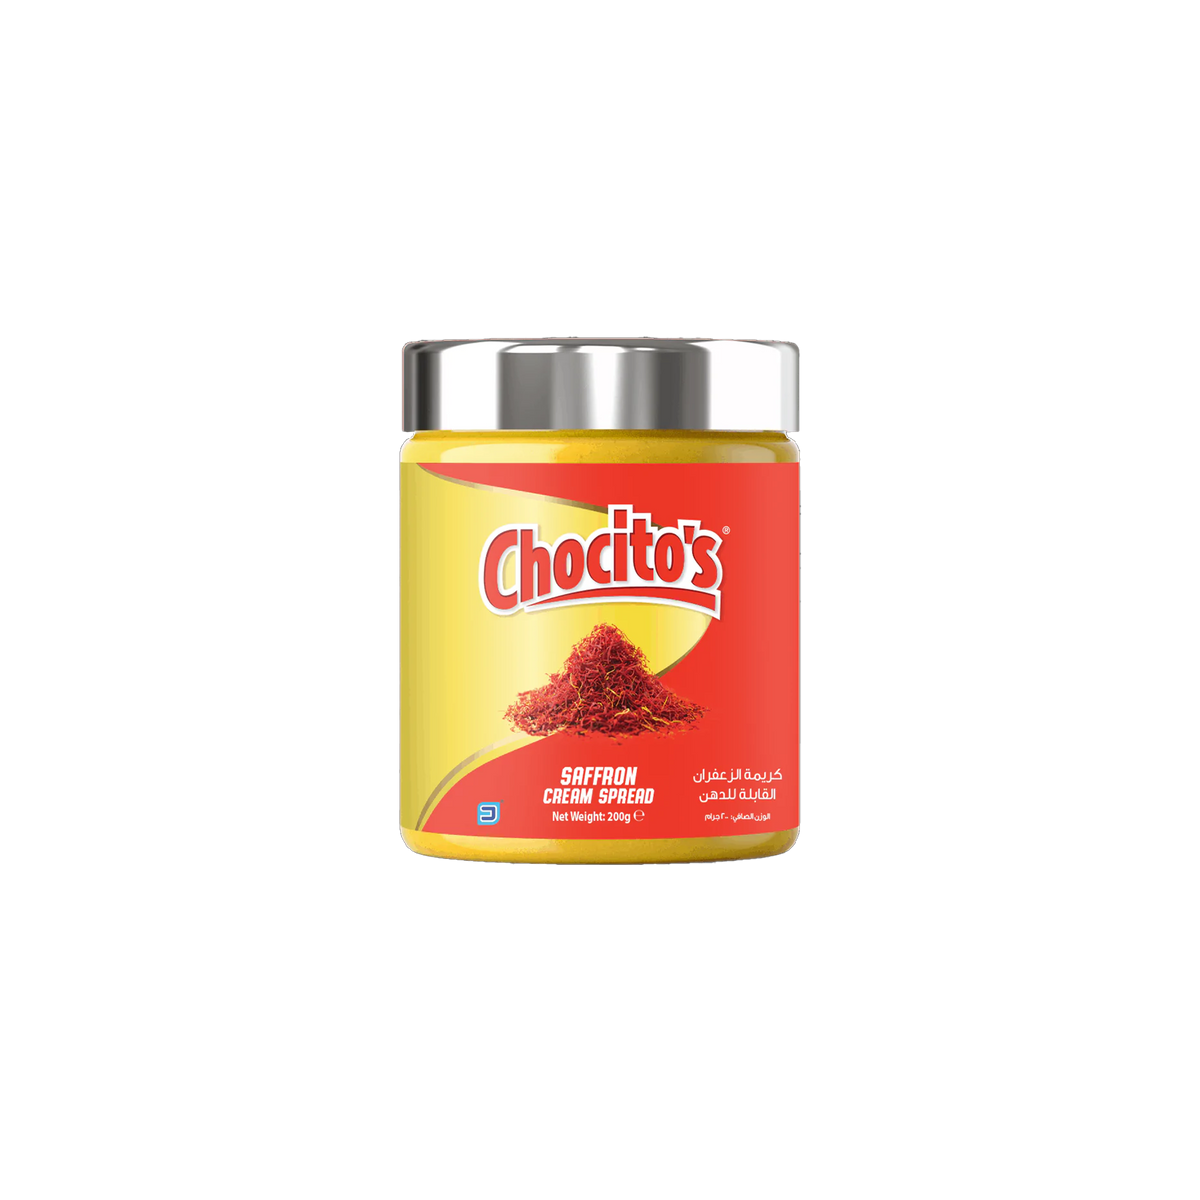 Chocitos Safrron Cream Spread 200Gm